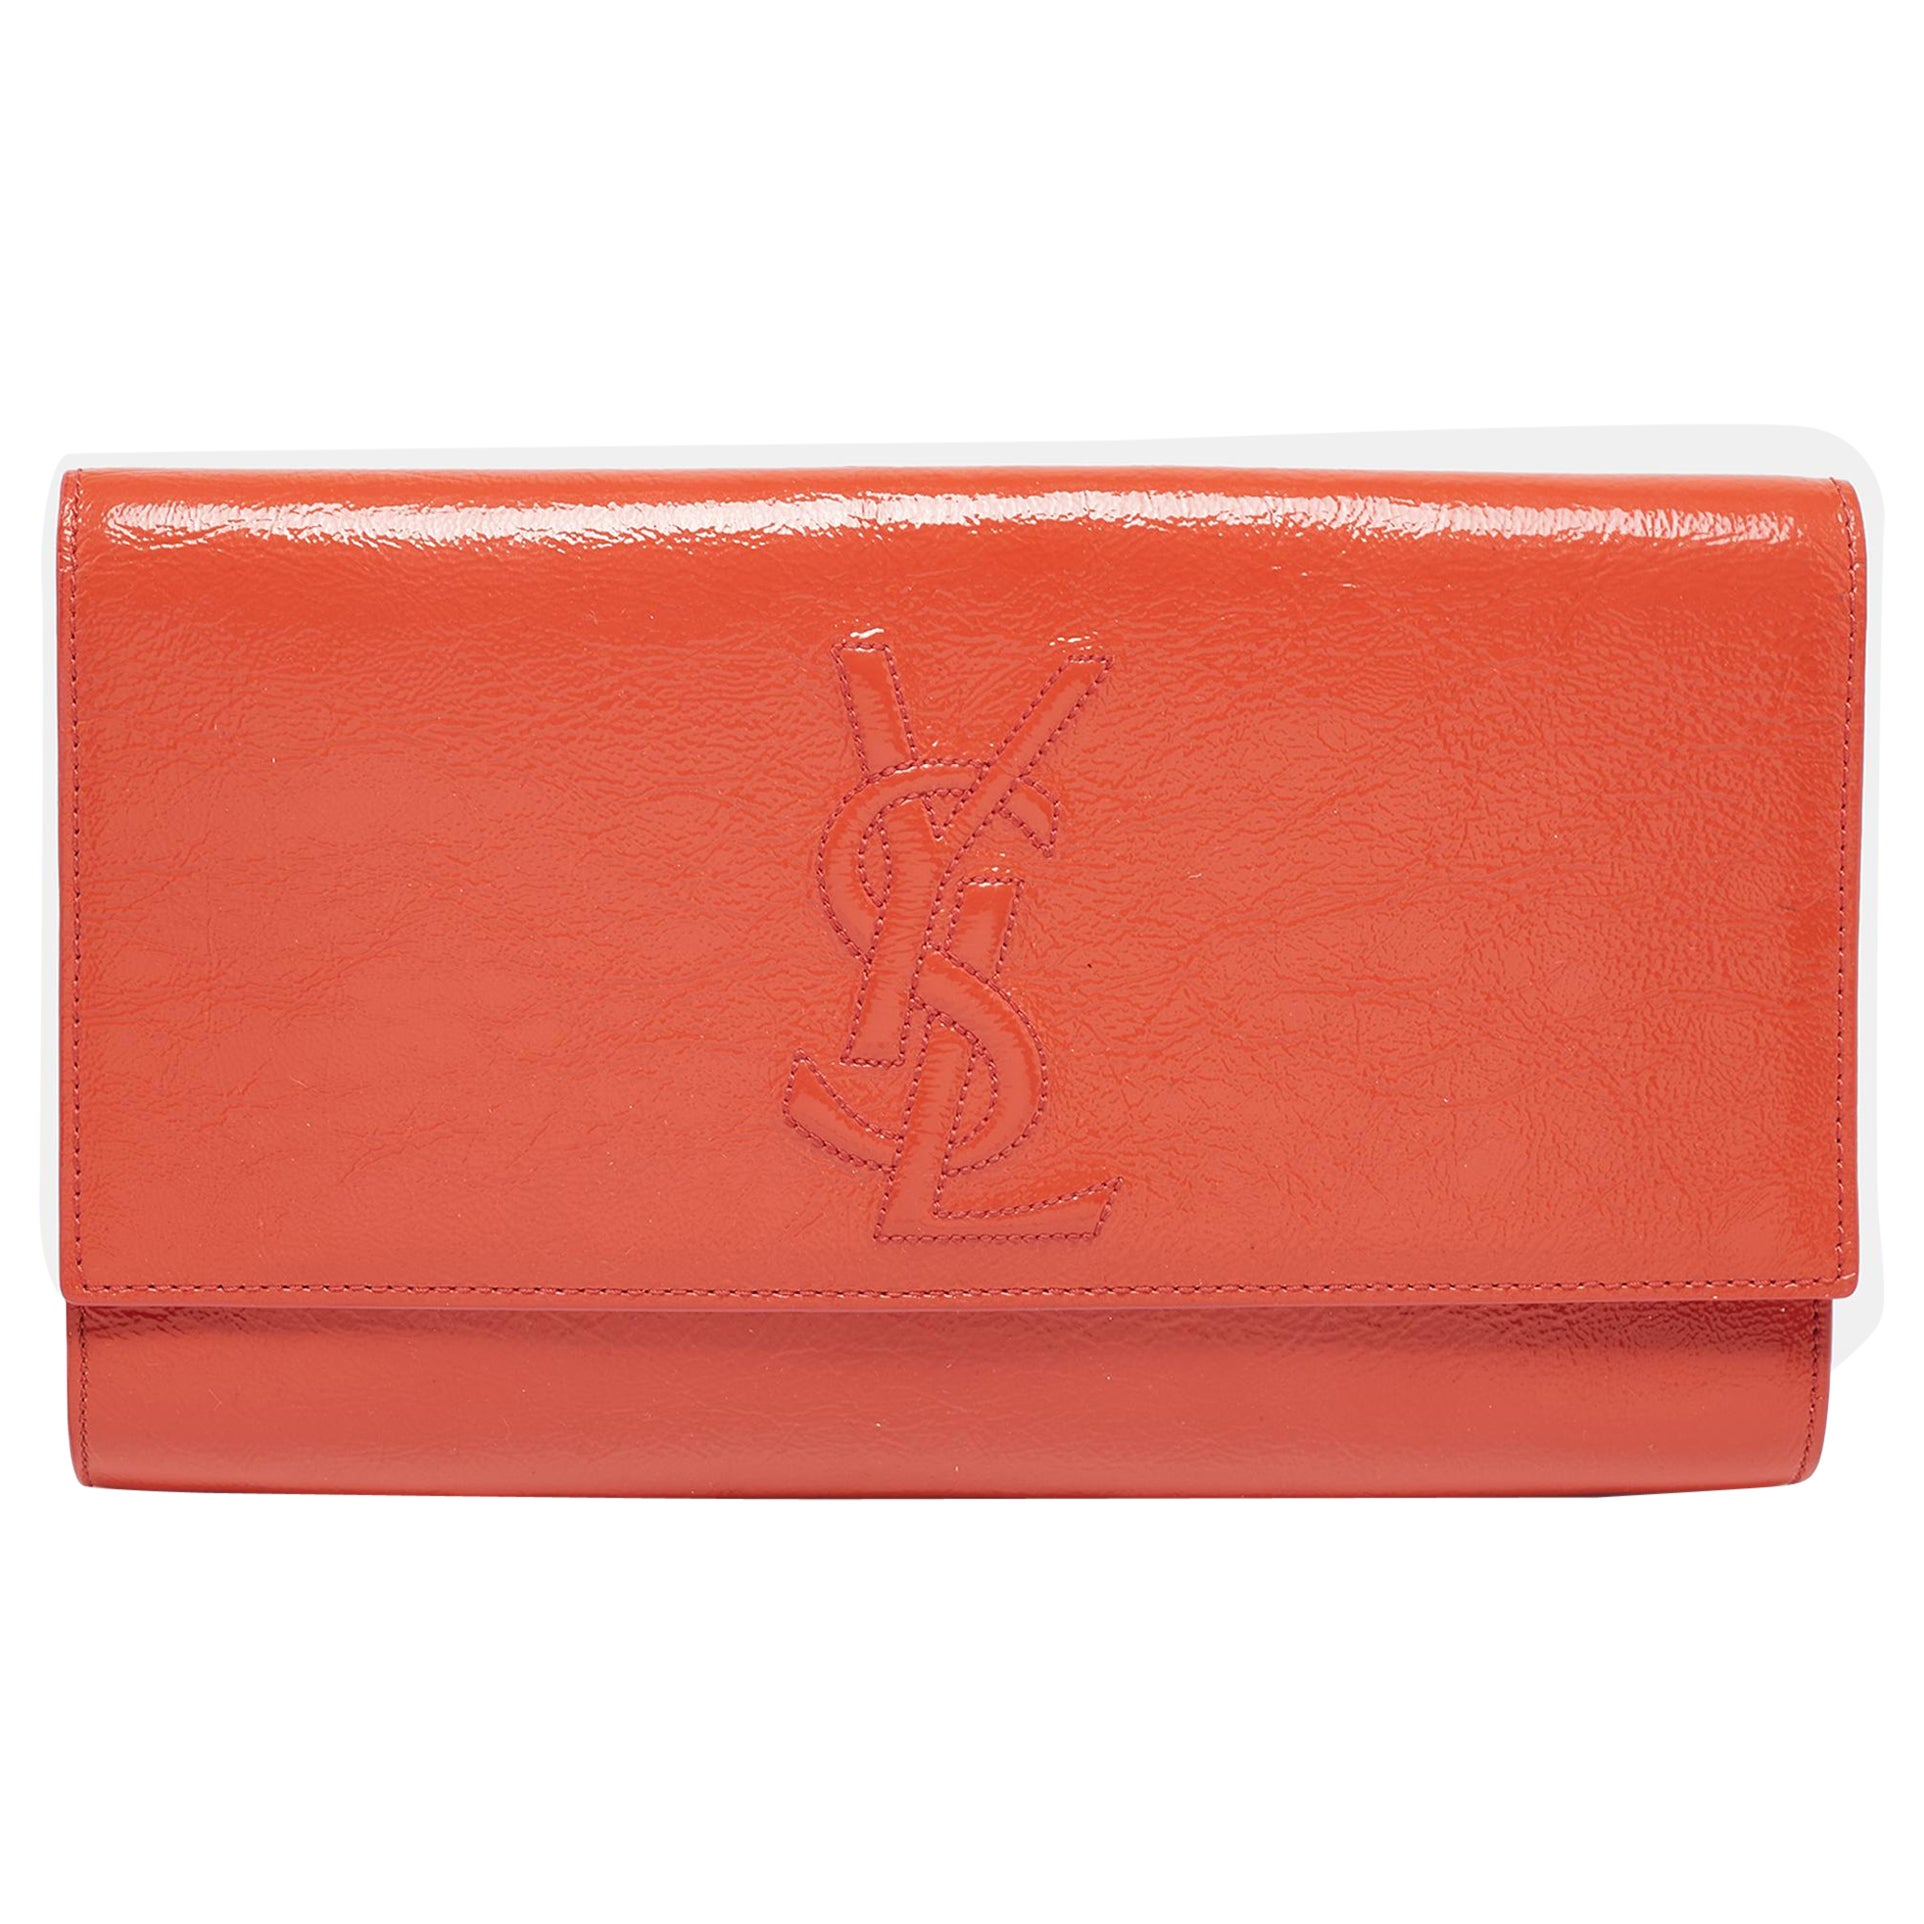 Yves Saint Laurent Orange Patent Leather Belle De Jour Clutch